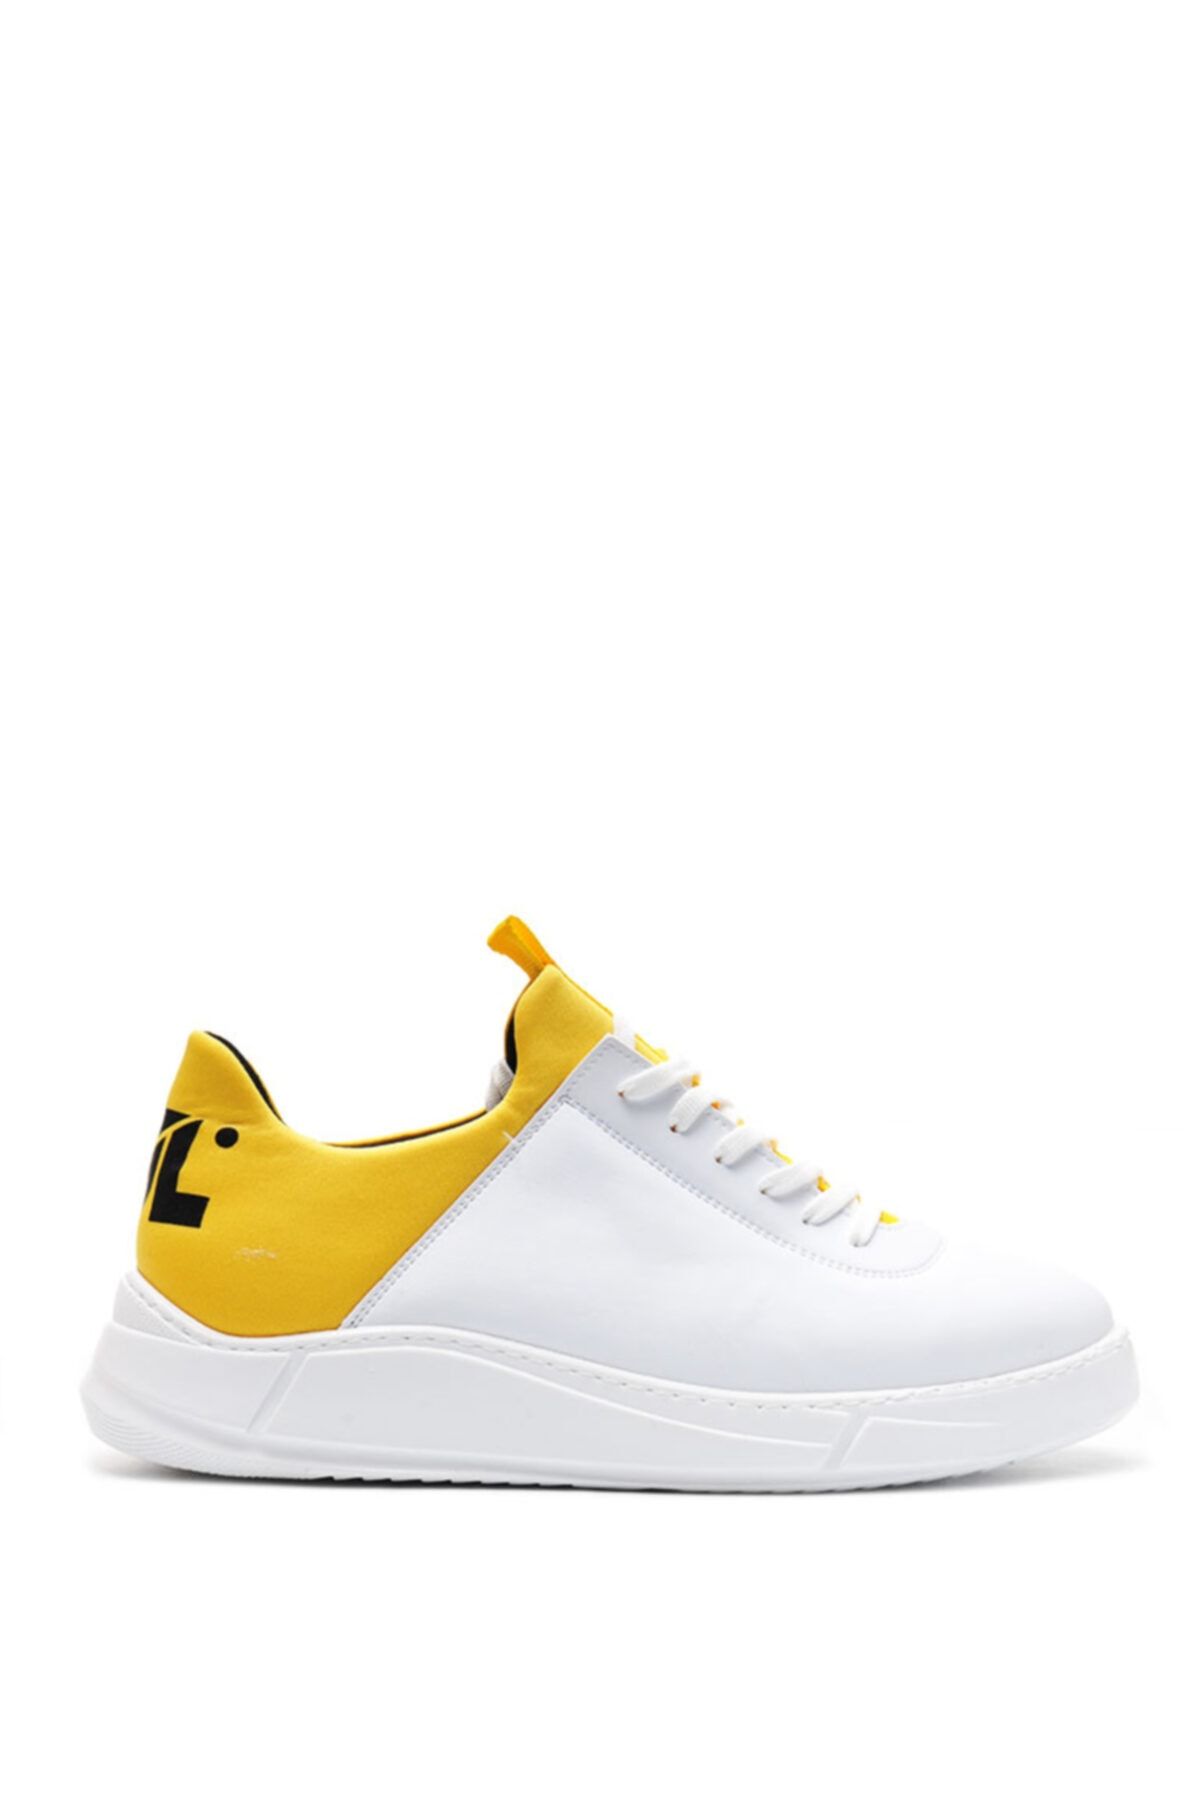 Bulldozer 201434 Beyaz Sarı Erkek Casual Ayakkabı